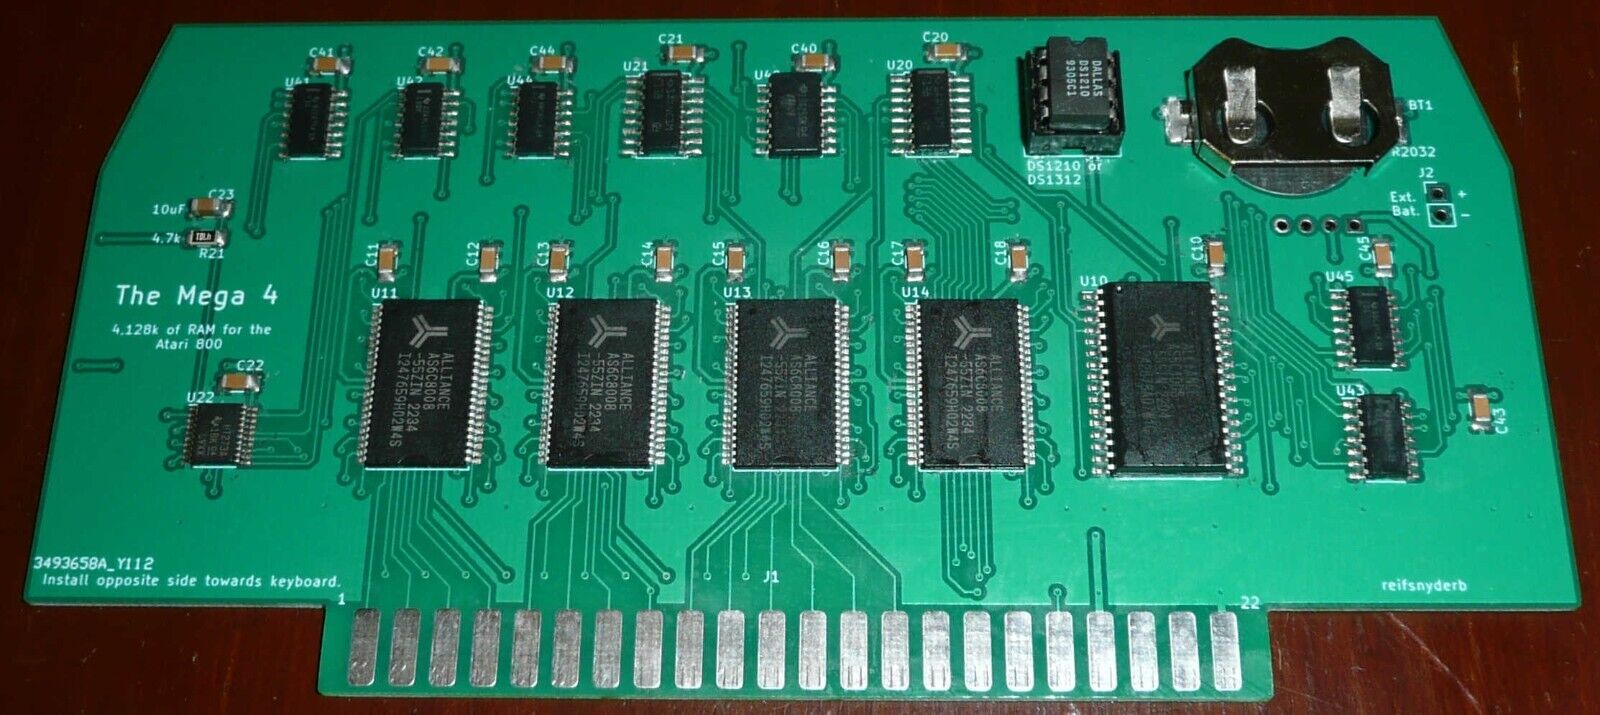 The Mega 4 -- Atari 800 4128k Memory Upgrade